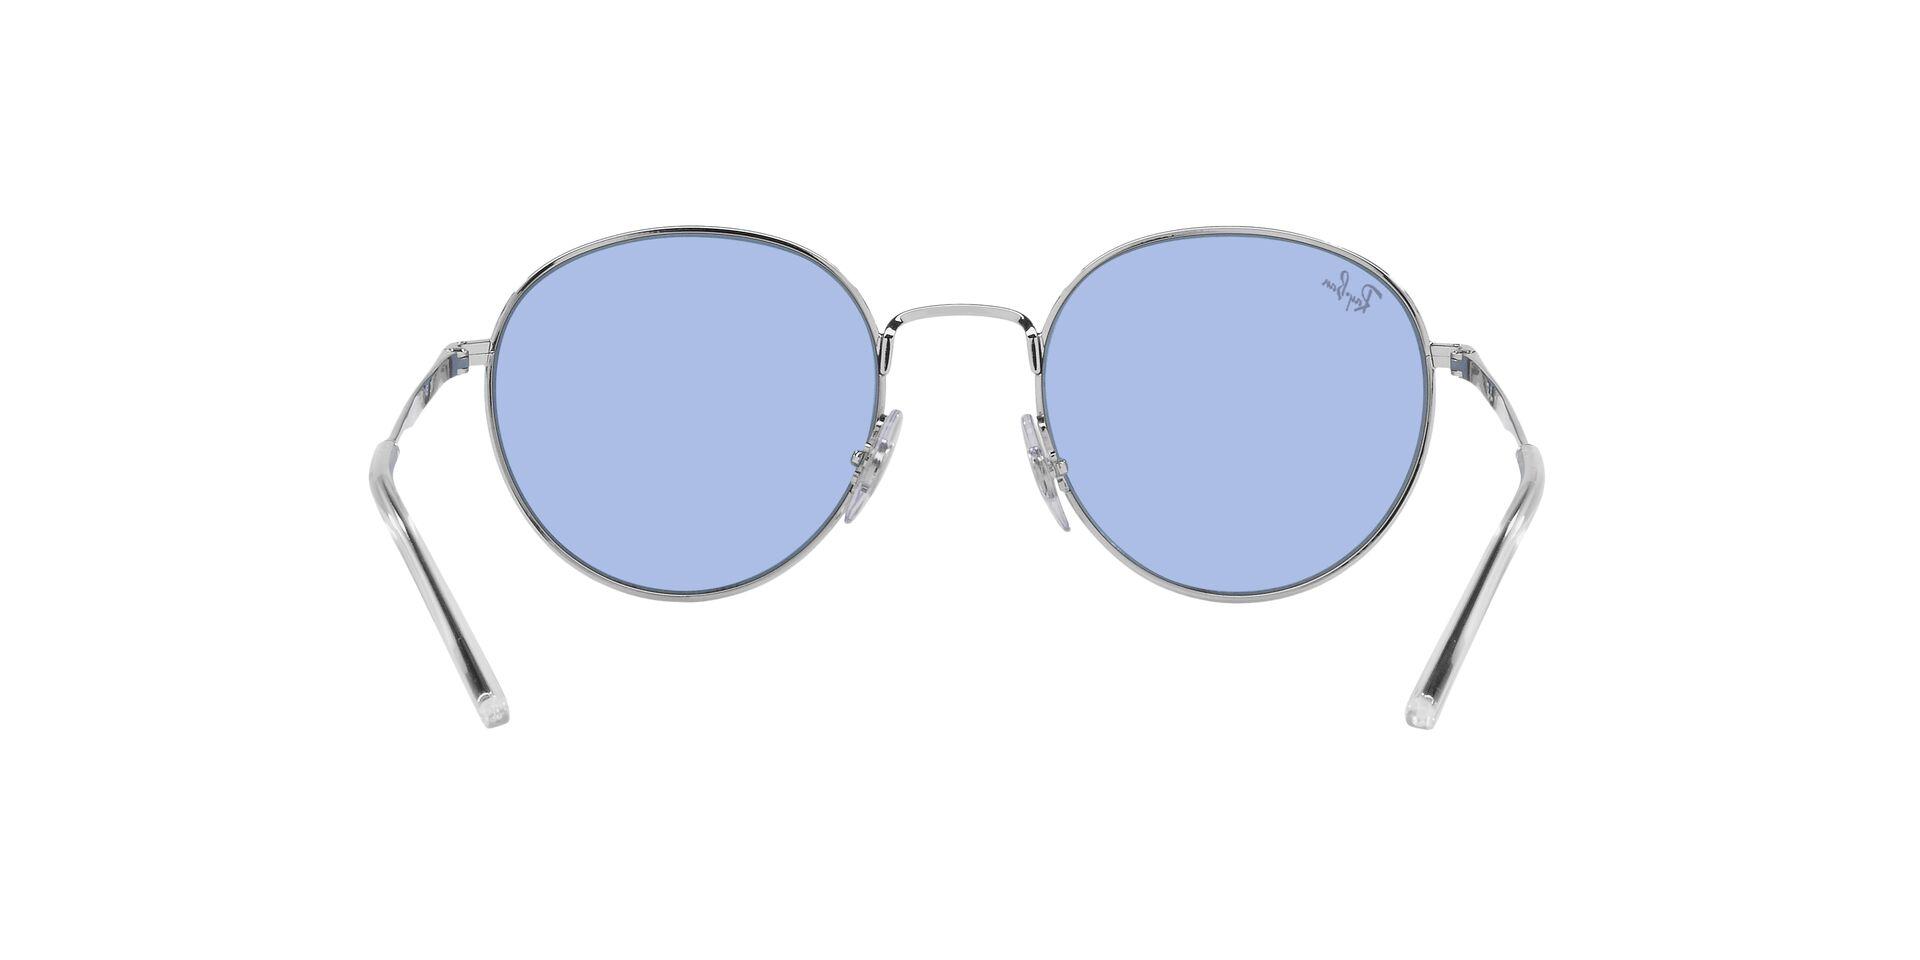 Mắt kính RAY-BAN - - RB3681 003/80 -Sunglasses